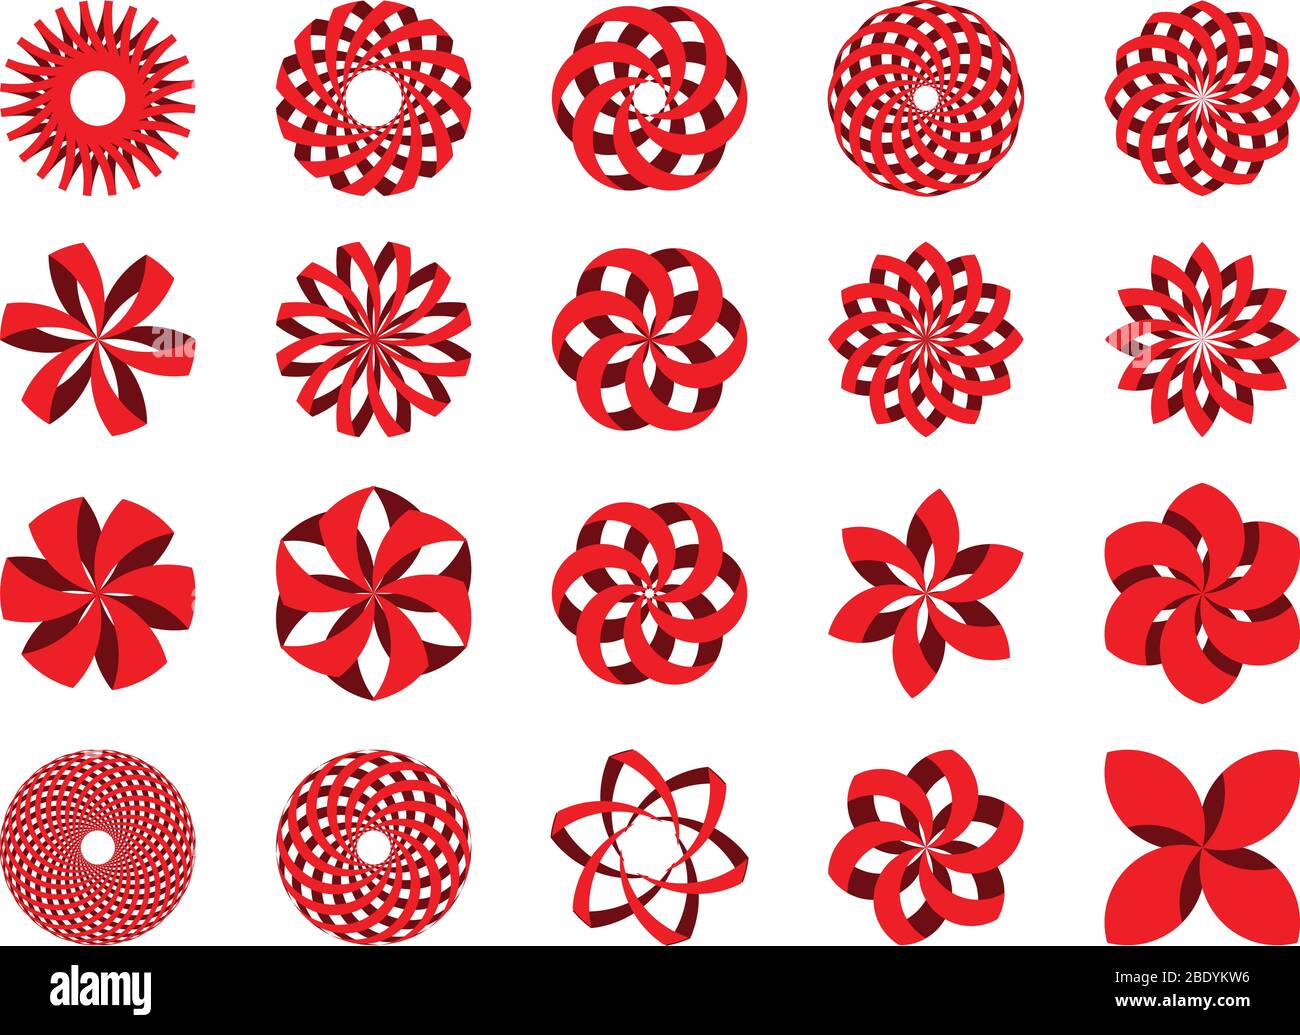 Conjunto de 20 iconos de ilustraciones abstractas en 3d en formato vectorial. Se puede utilizar como logotipo, en la promoción de Marca o para diferentes diseños de diseño gráfico. Ilustración del Vector